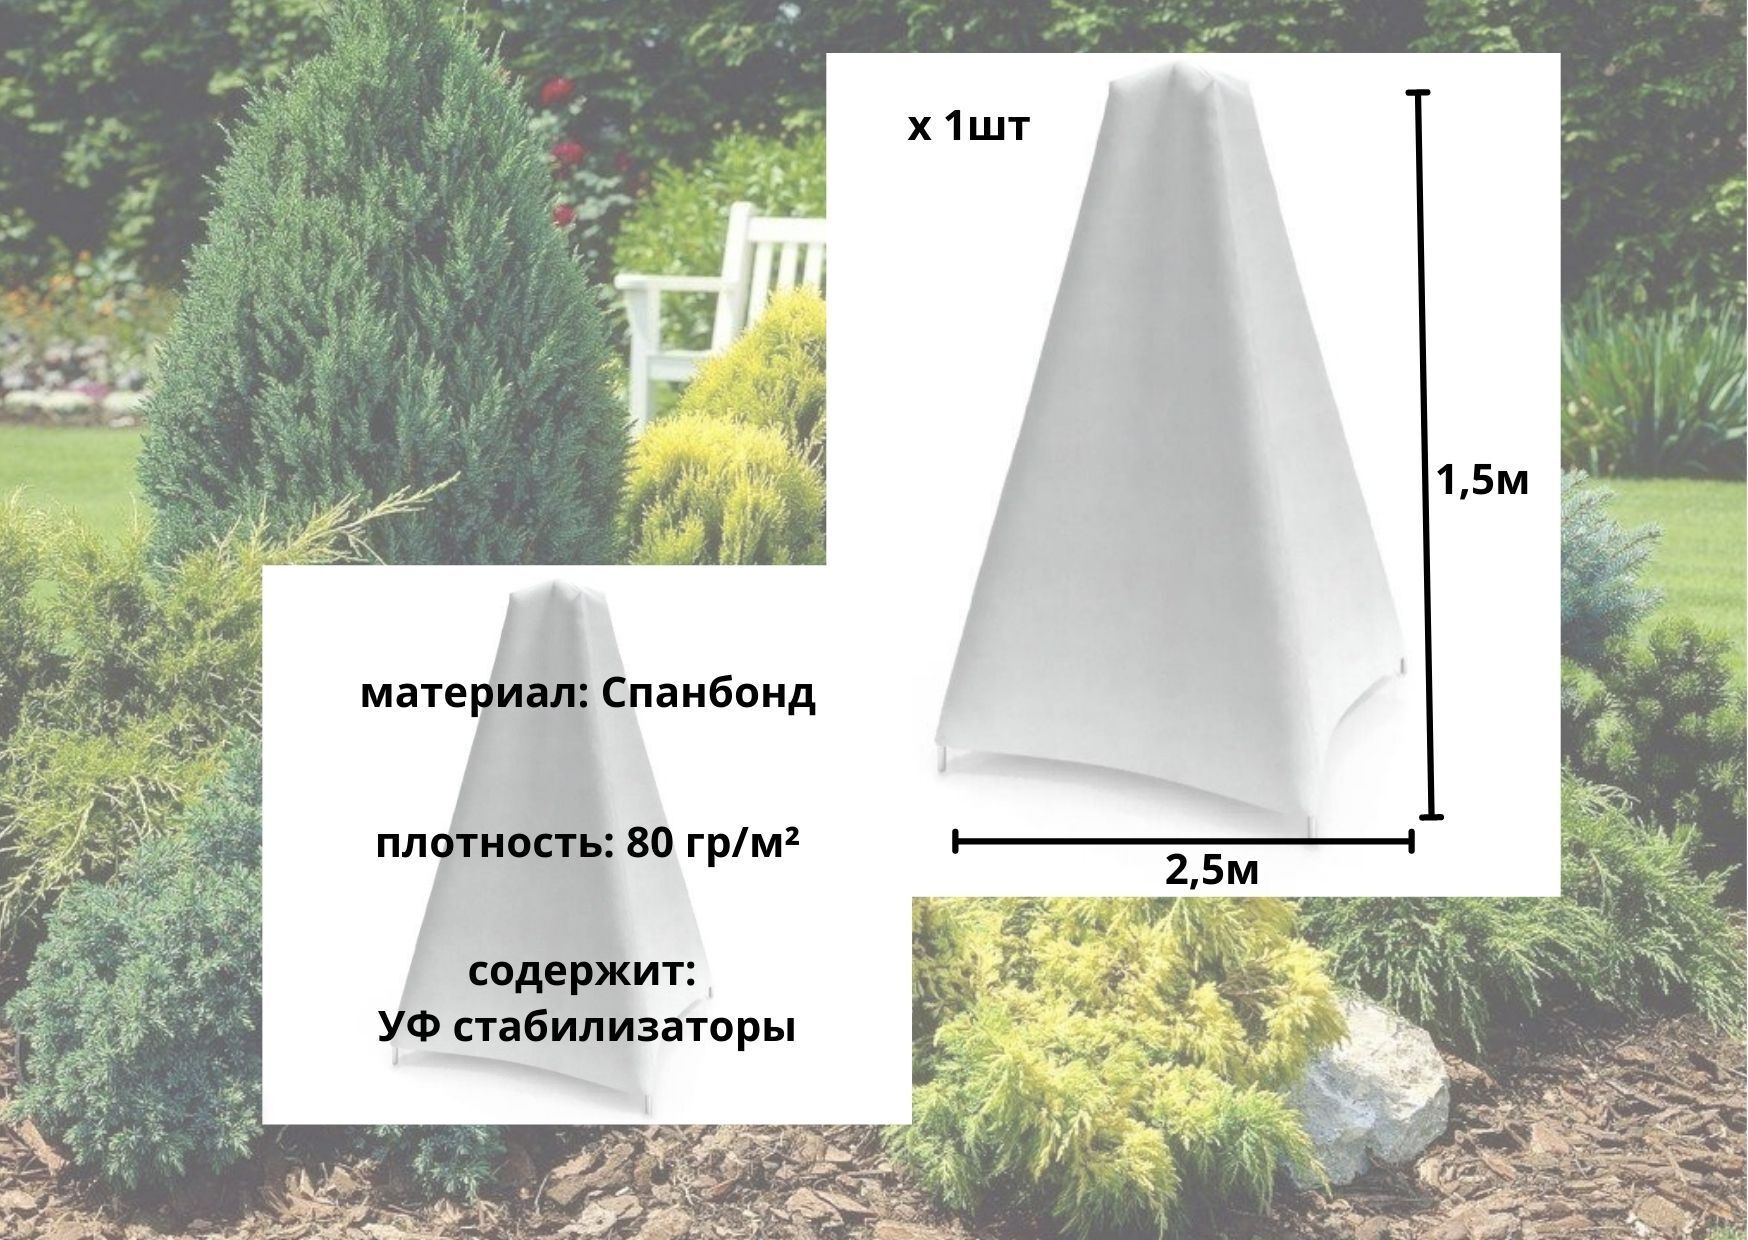 Чехол для укрытия растений,  материал, 2,5x1,5, высота 1,5 м .